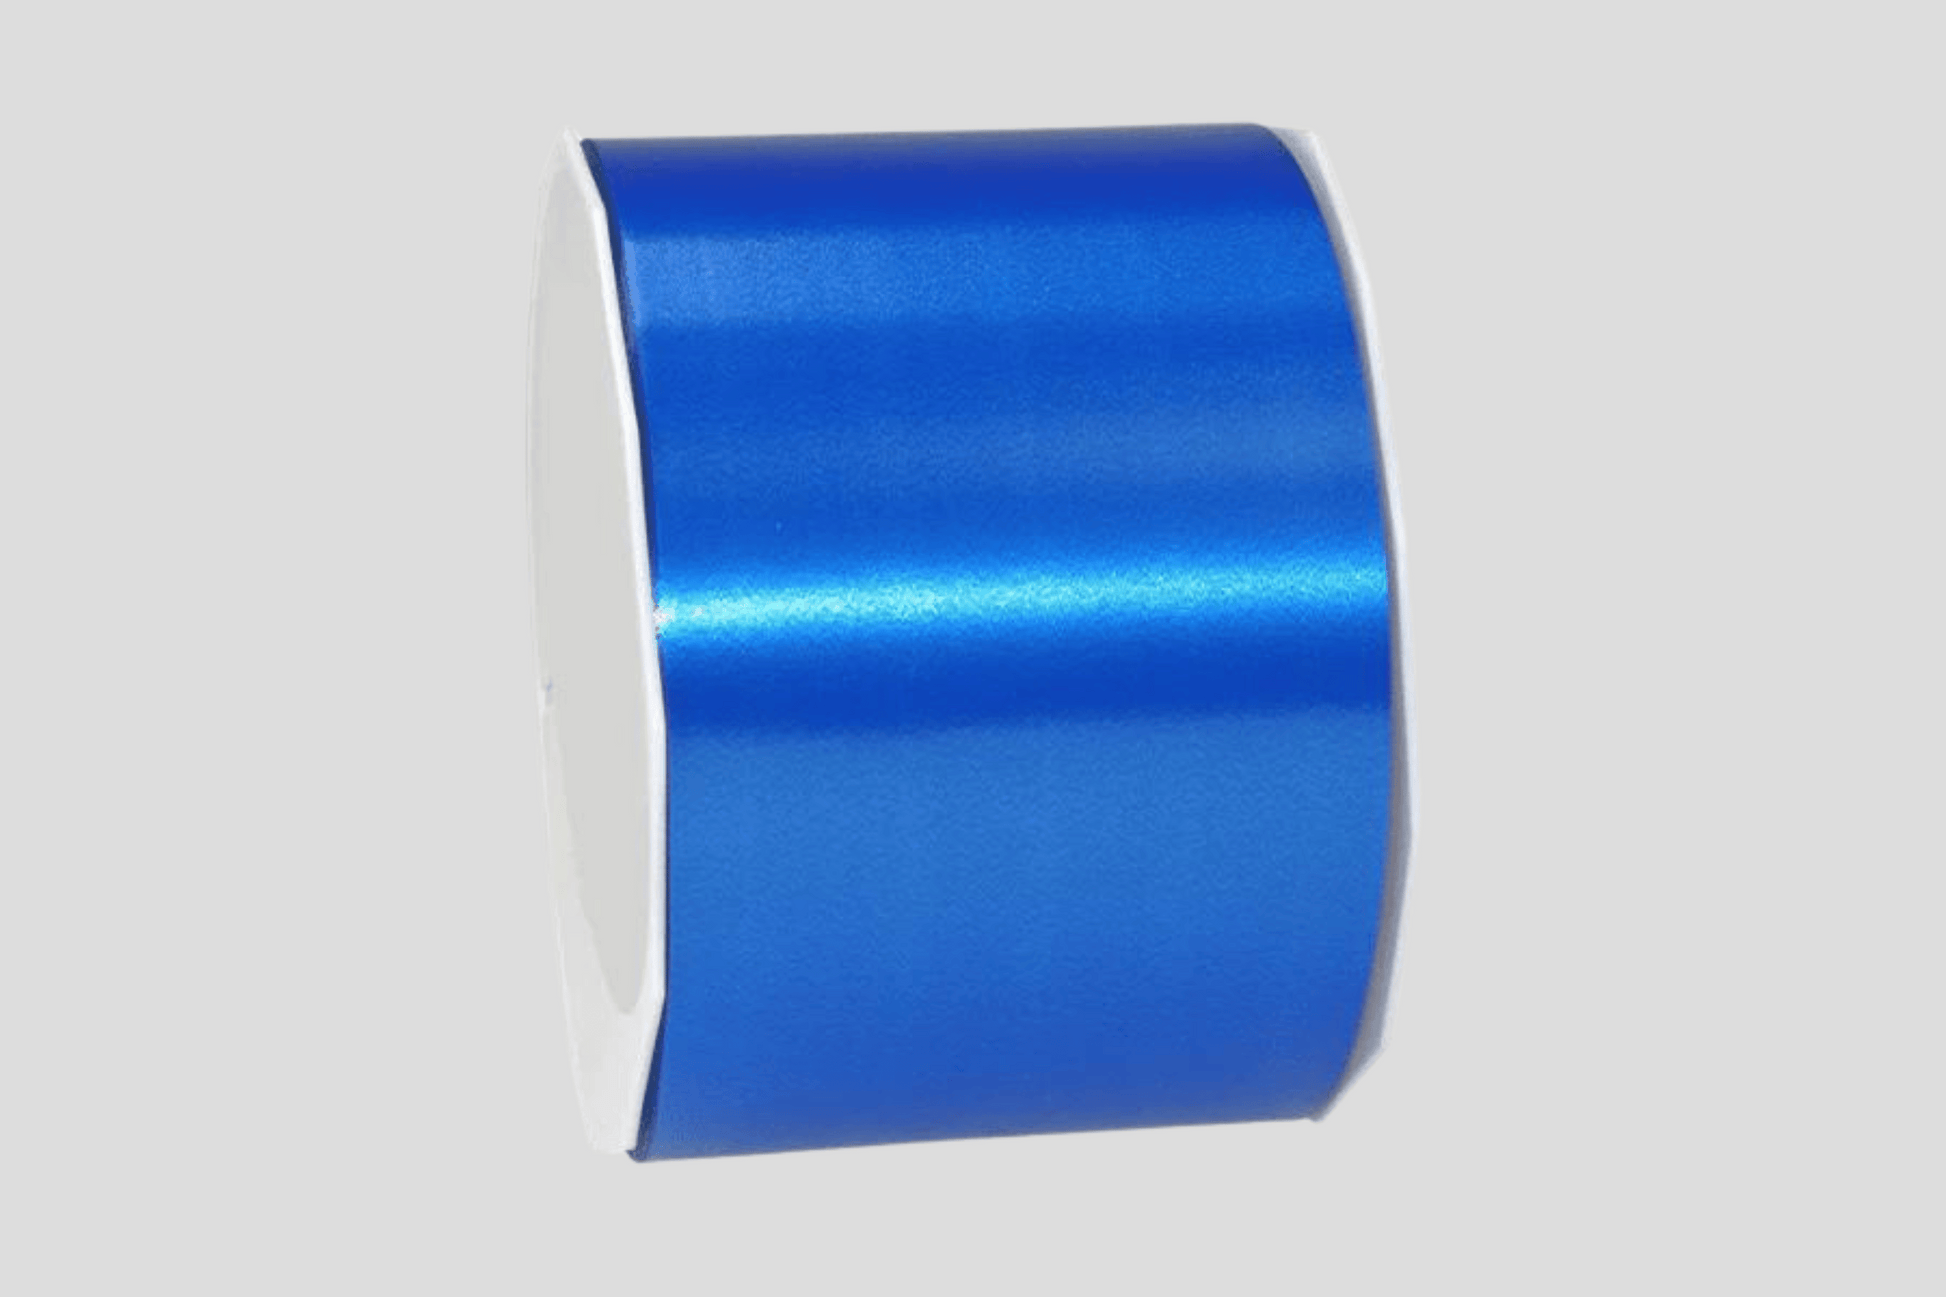 En rull med blå Målgangsbånd i farger på lager av JM Band NO på hvit bakgrunn.